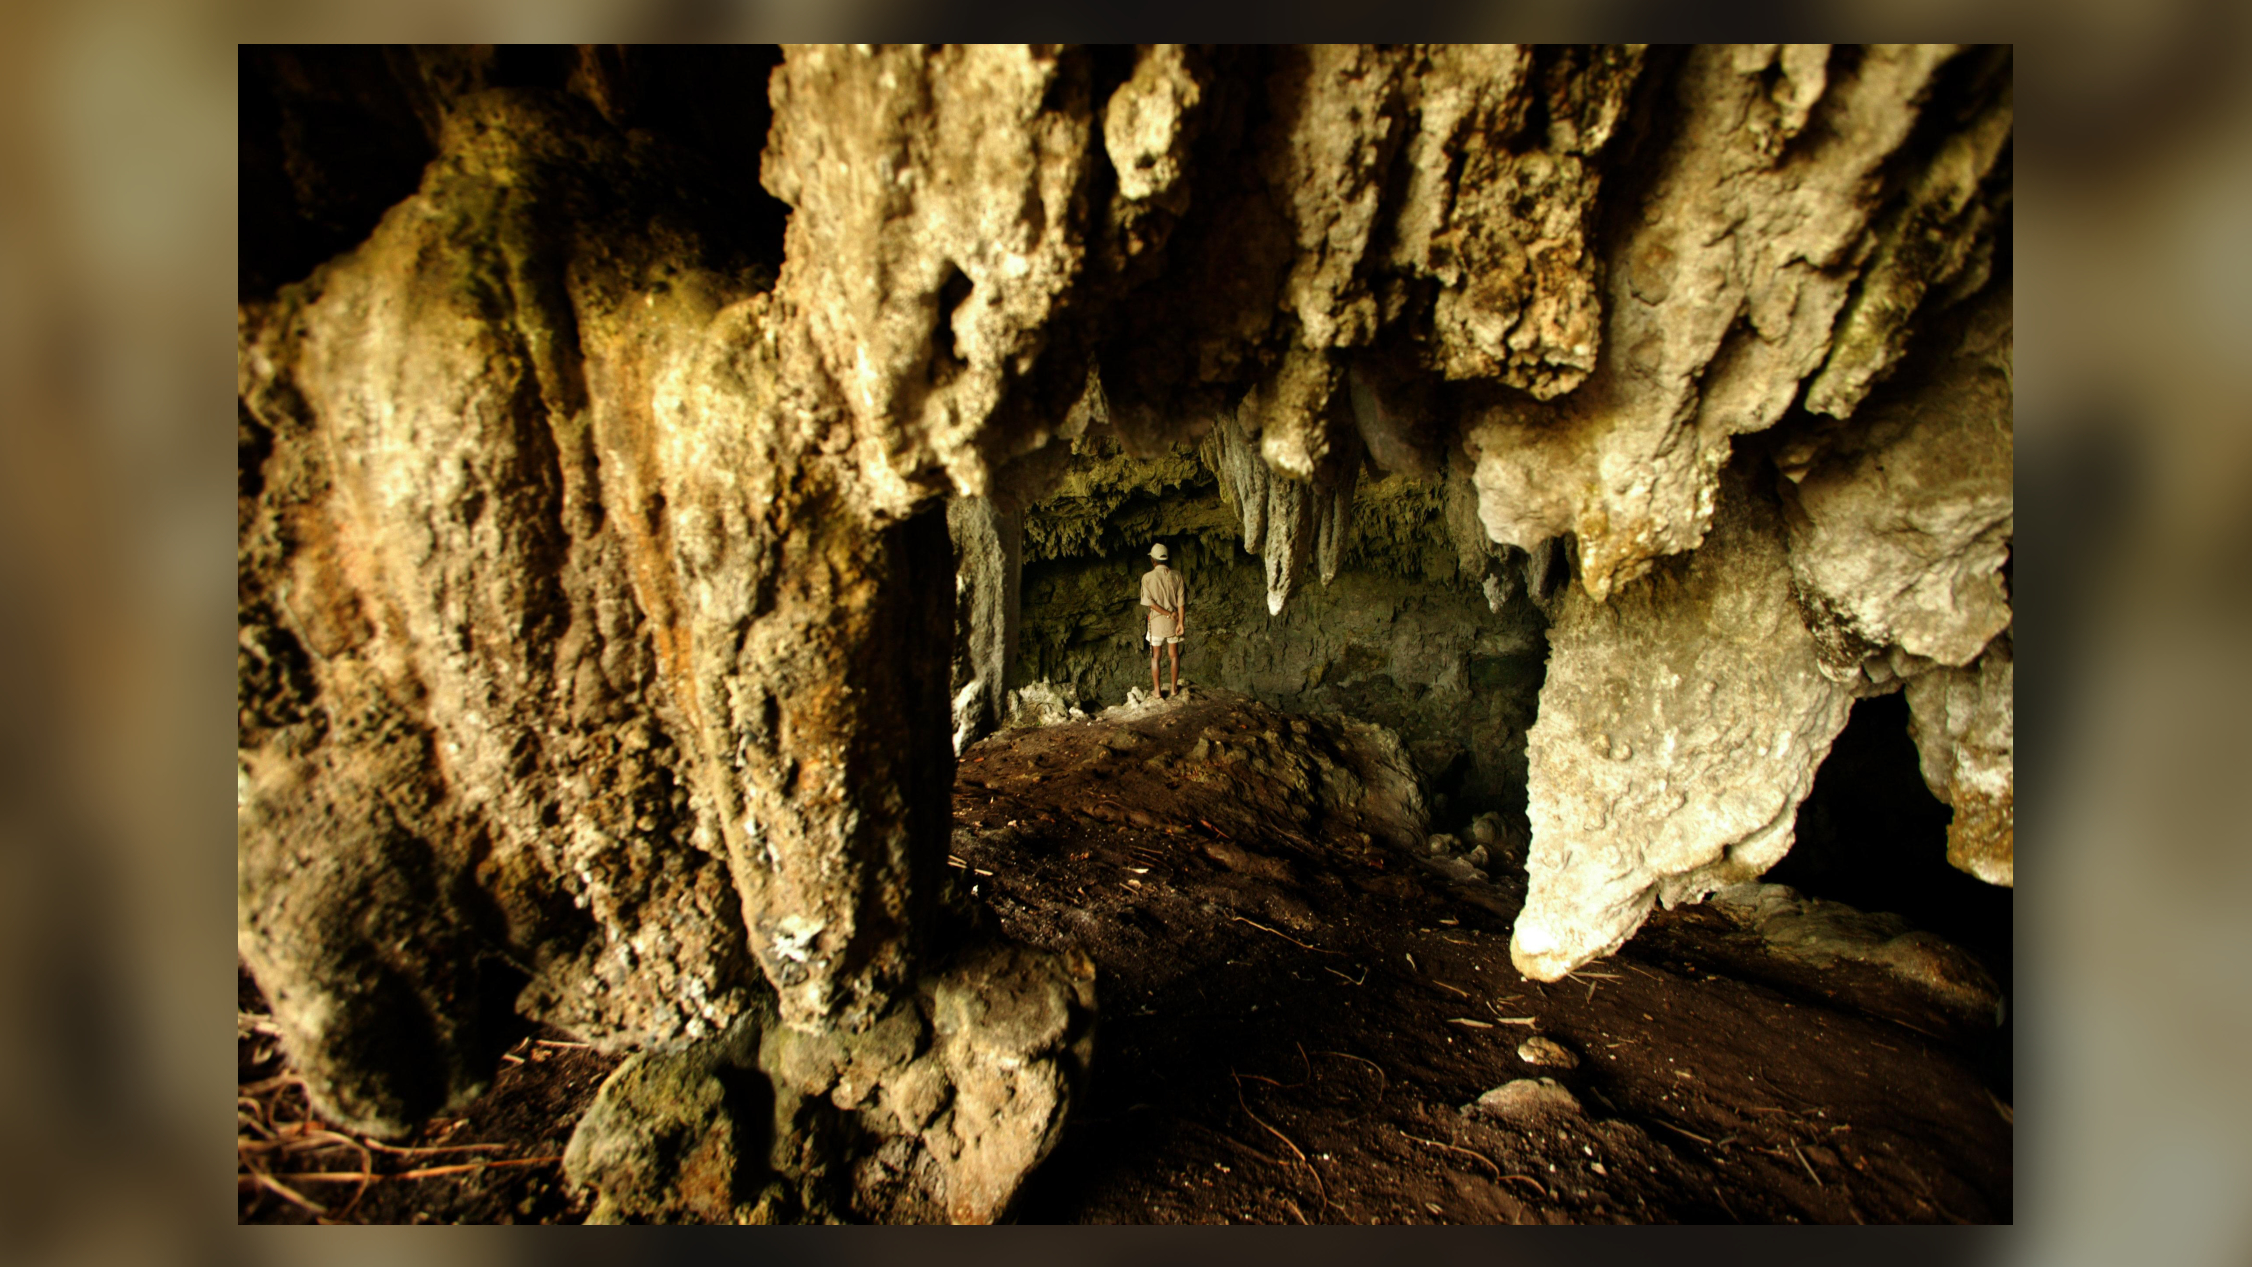 Salah satu gua tempat ditemukannya tulang belulang genus Homo fluorescens